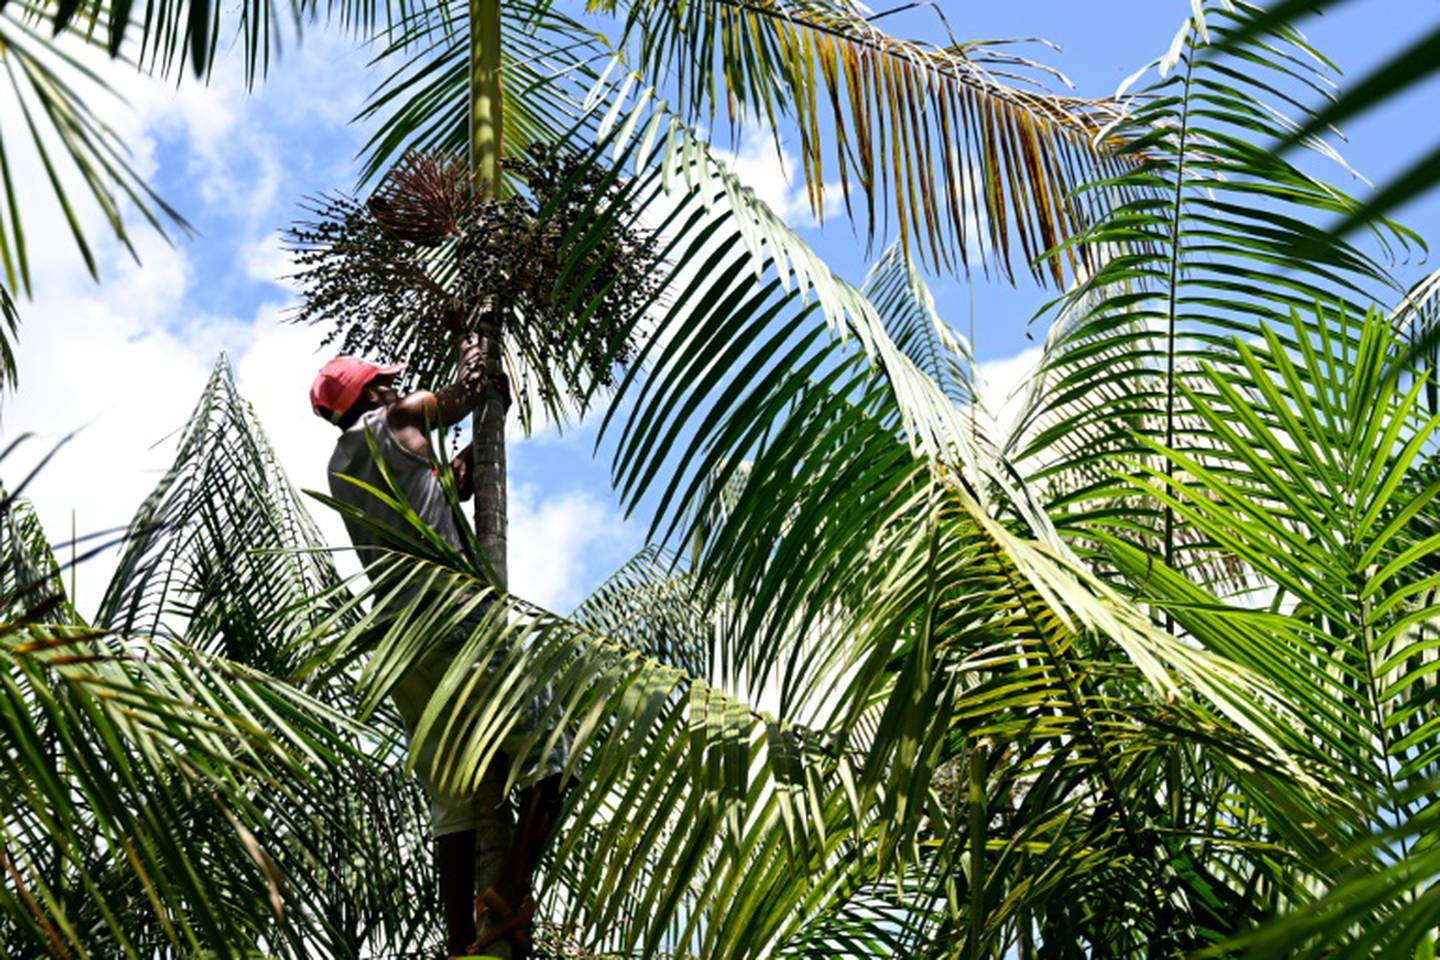 El agricultor Jose Santos Diogo corta racimos de fruta de una plama de açaí en una plantación en Abaetetuba, estado de Pará en la amazonía brasileña.